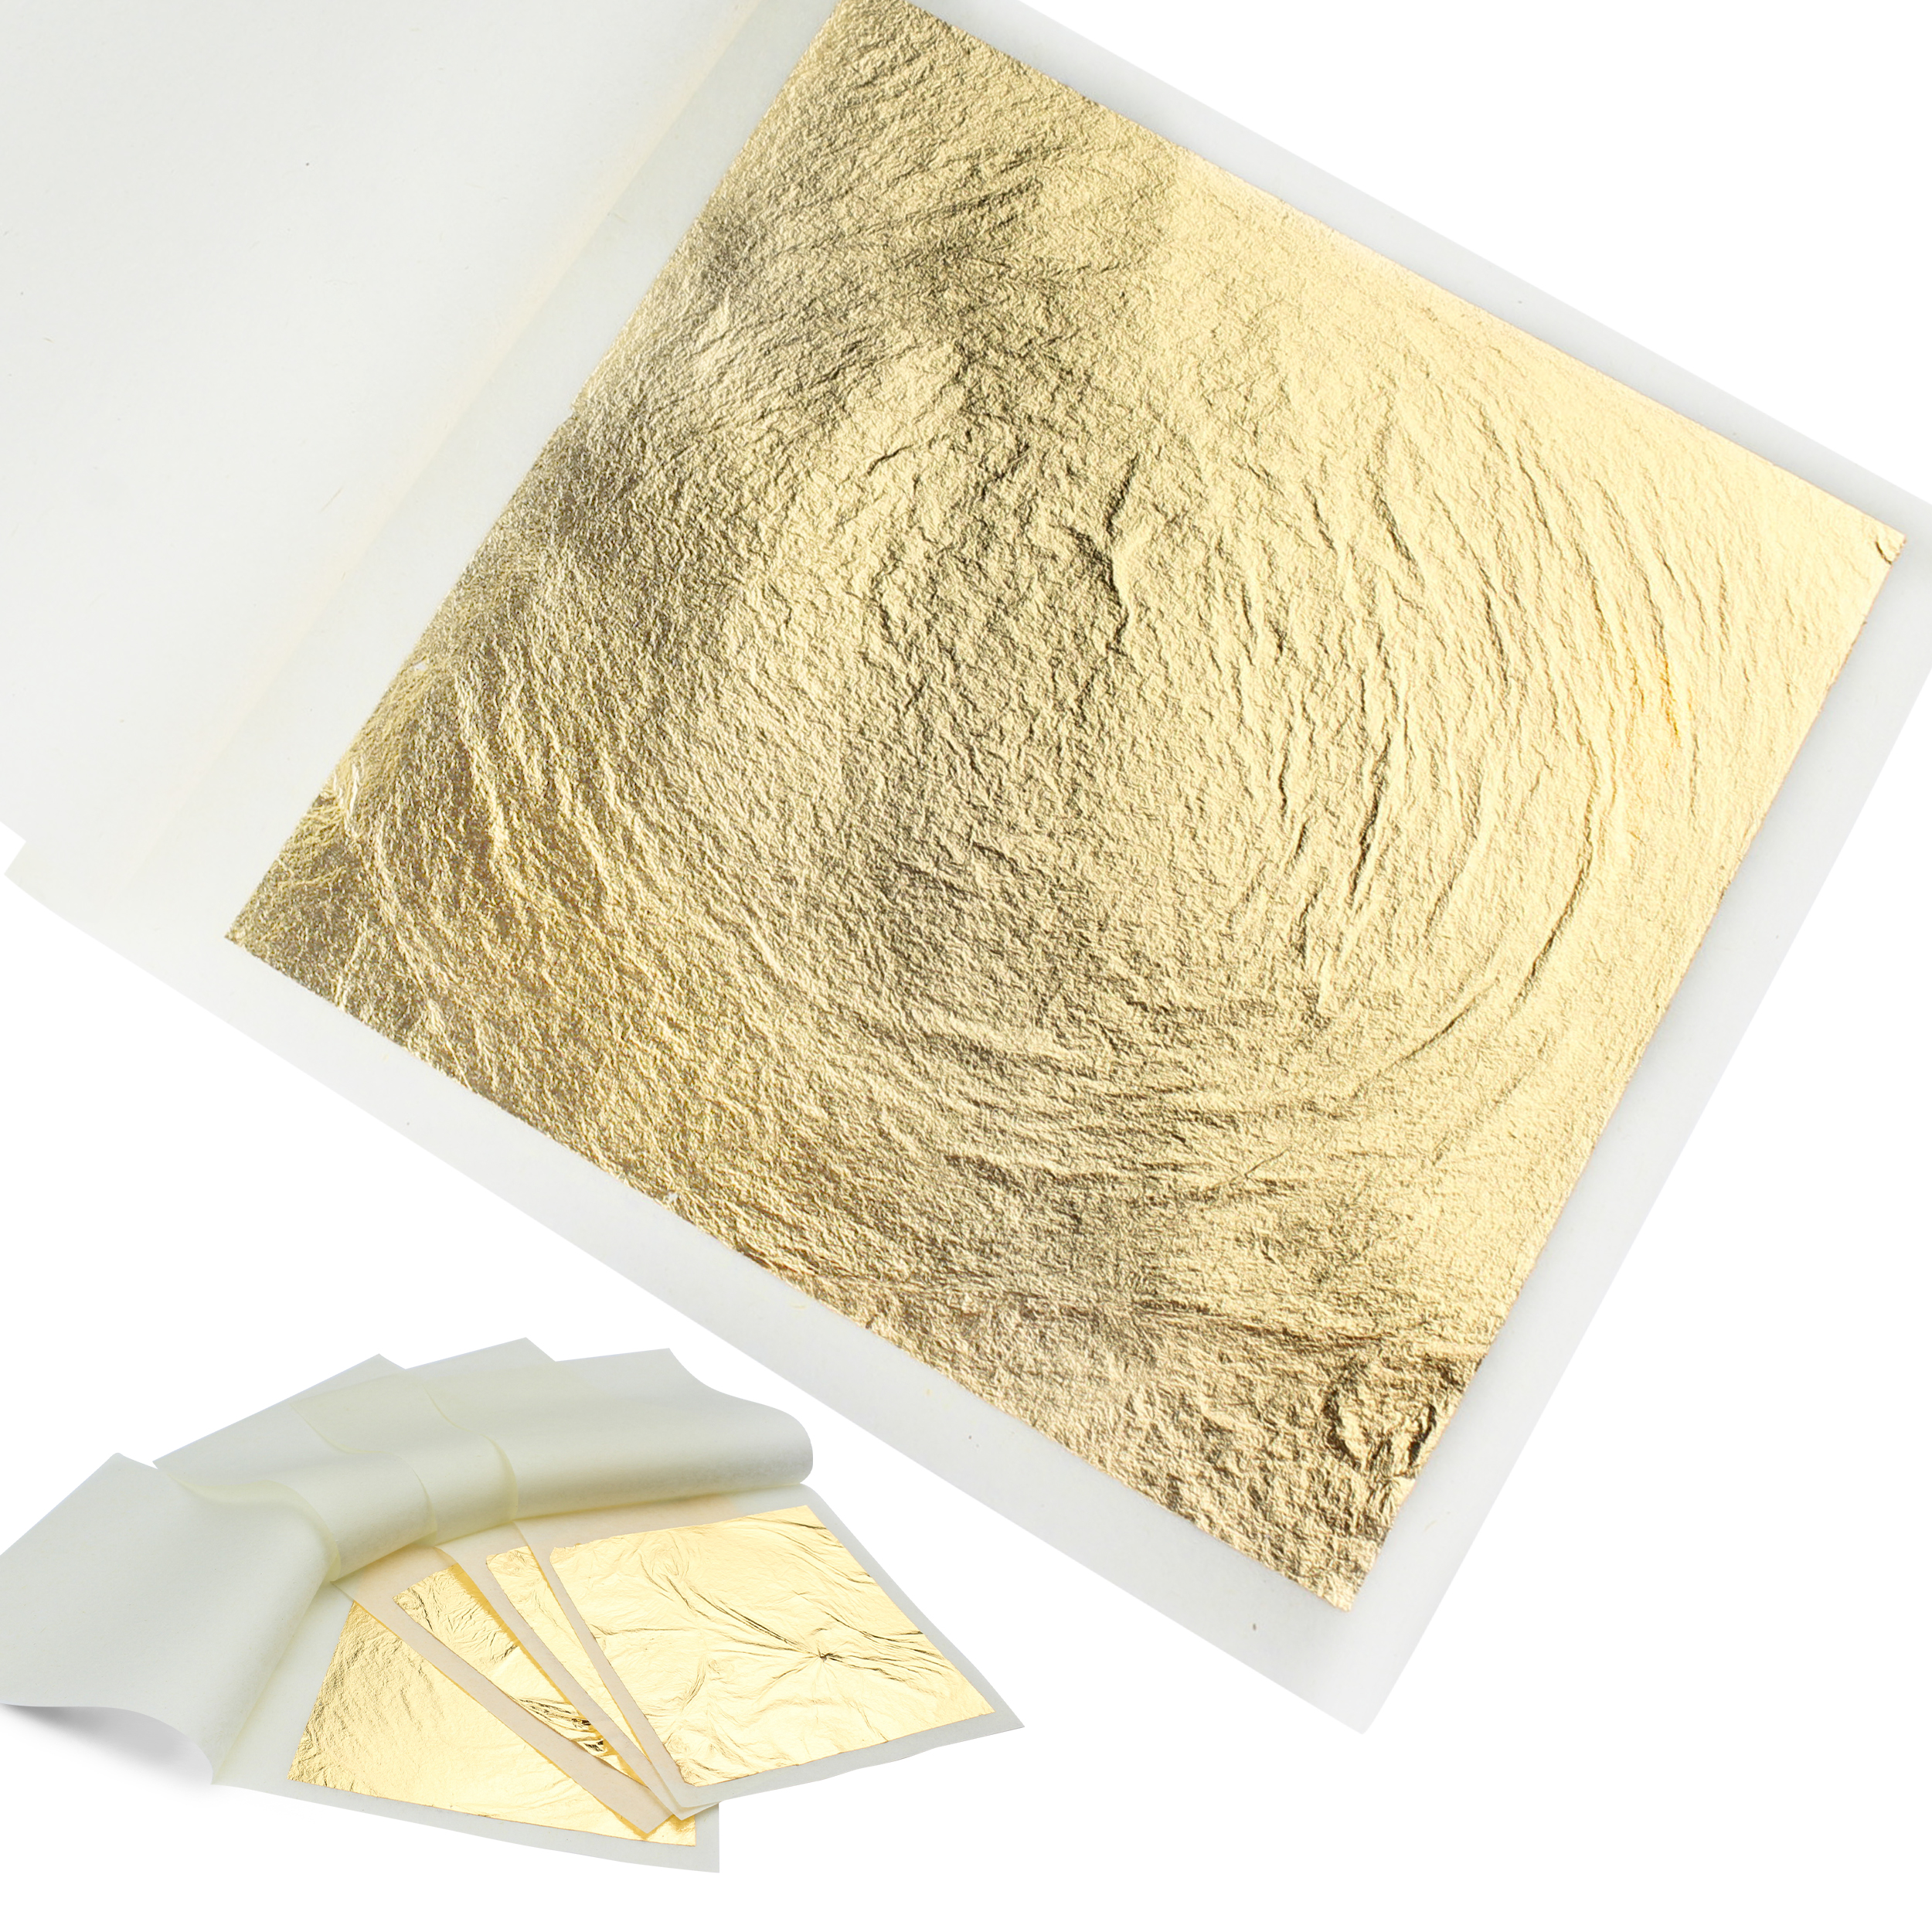 goldz: 24 Karat Edible Gold Leaf- Gold Foil Flakes for Cake